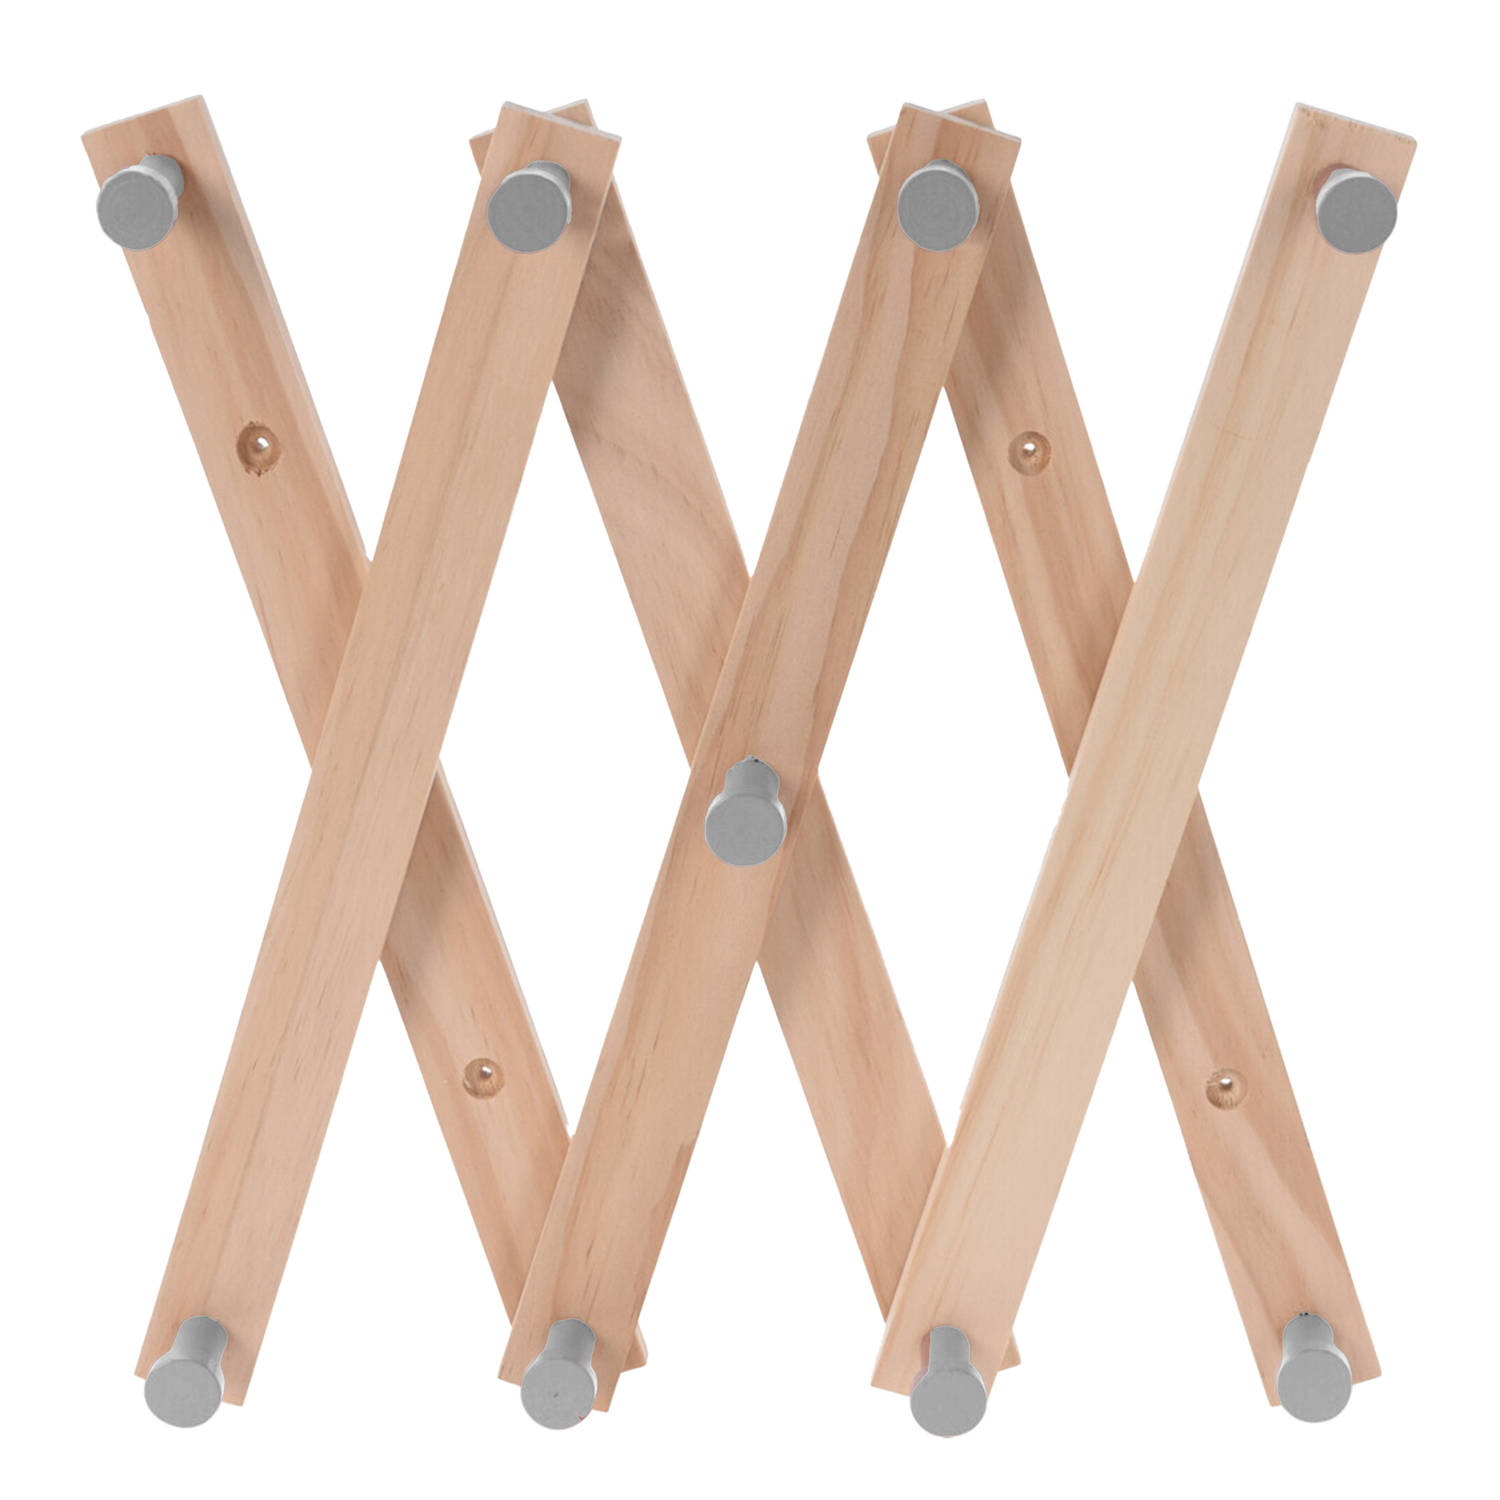 Kinderkamer deurhanger/kapstok verstelbaar - 9 grijze haakjes - hout - 60 x 12 cm - Kapstokken